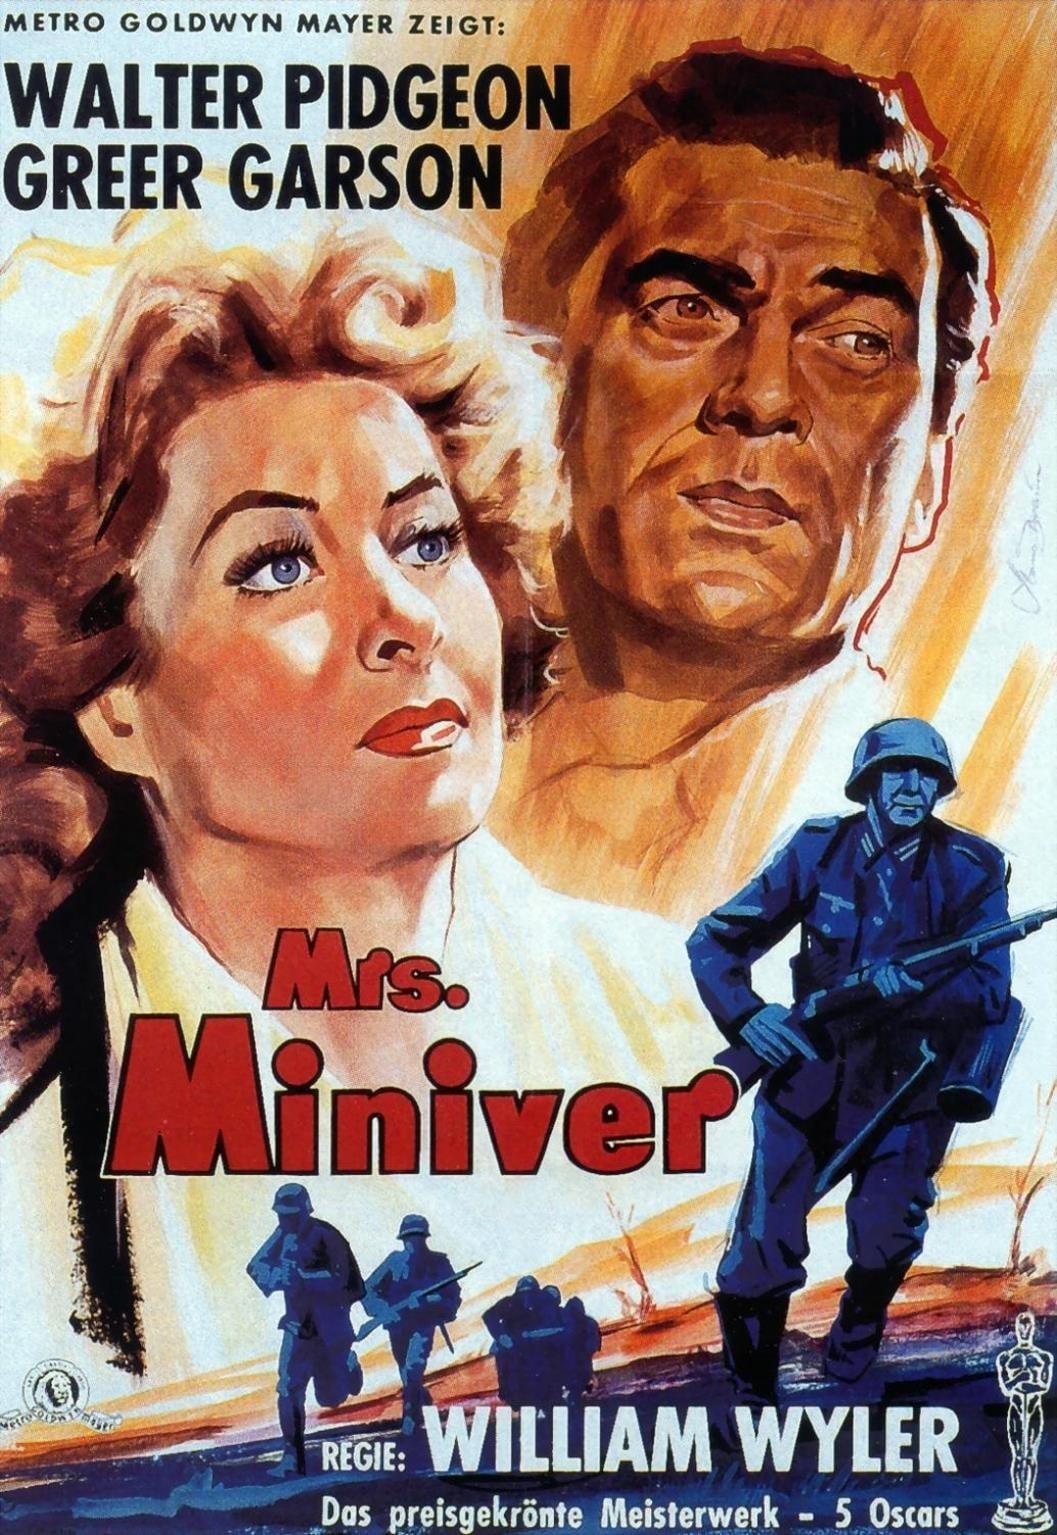 Mrs. Miniver poster